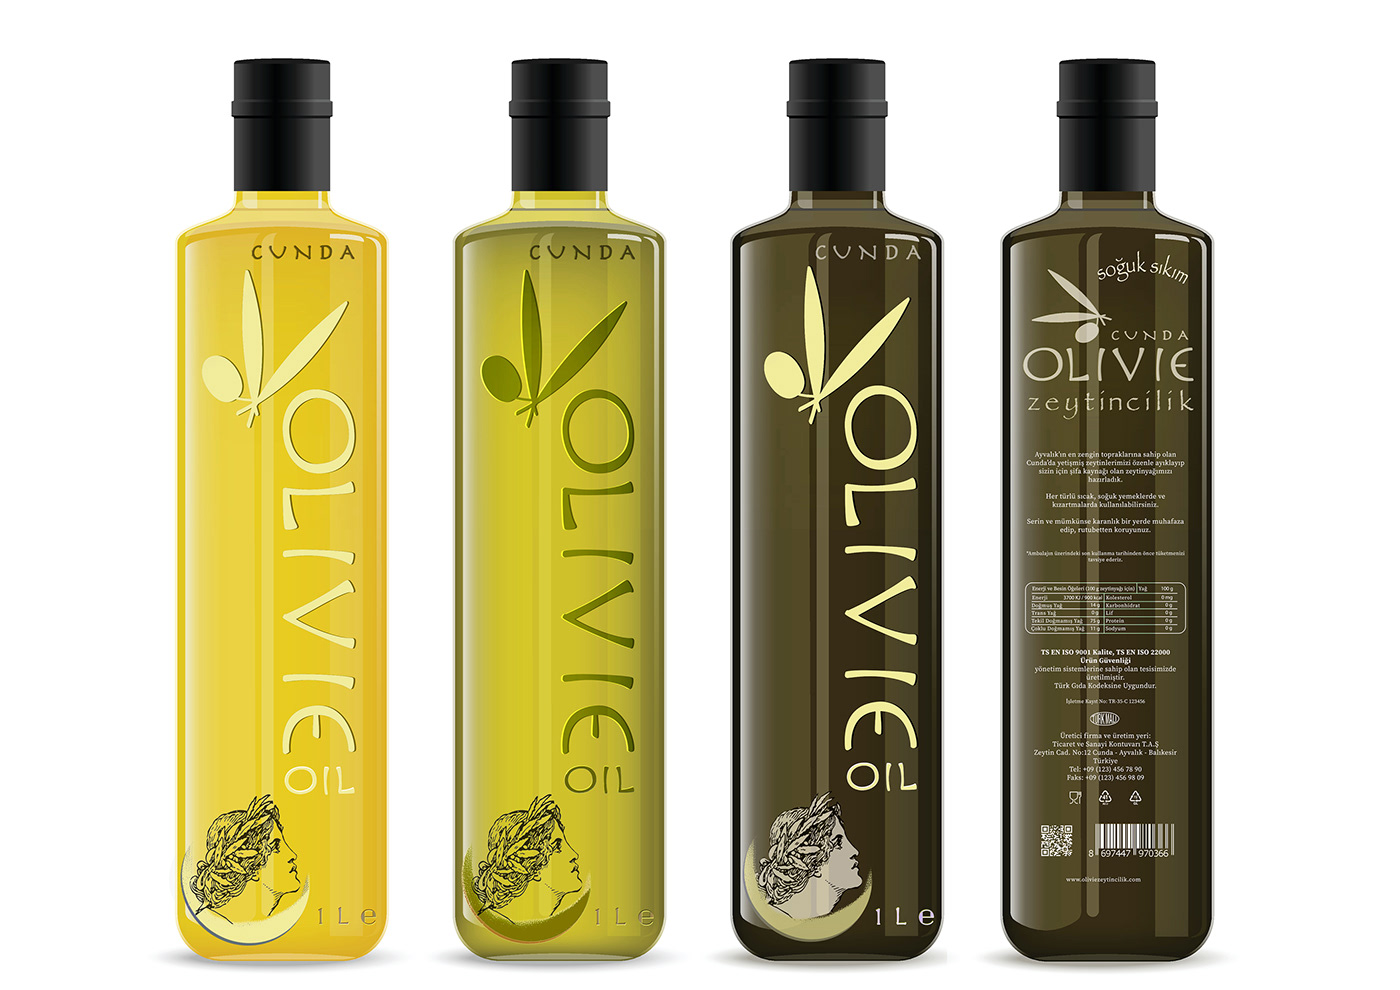 ayvalık branding  Cultivation cunda oil olive Zeytincilik zeytinyağı